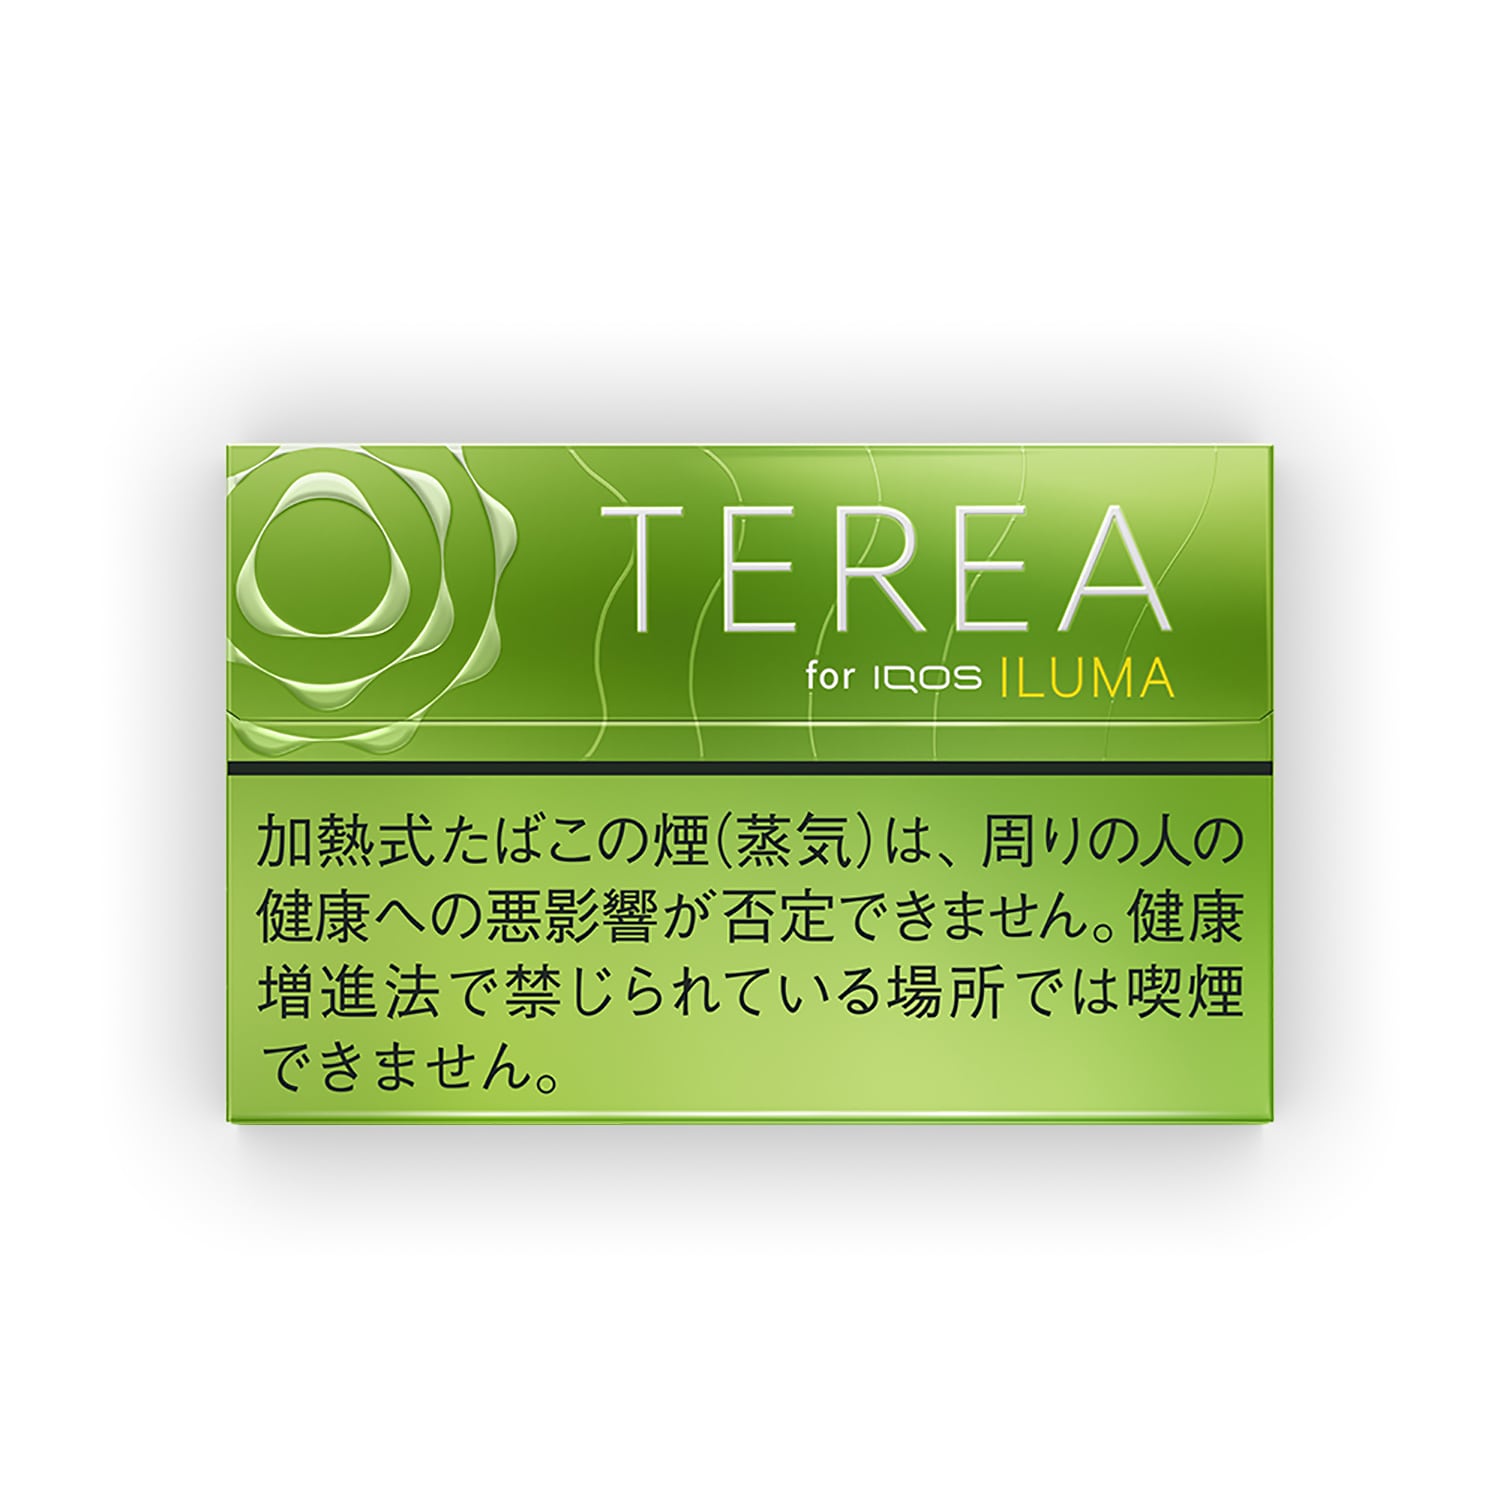 Terea - Yellow - Buy Online